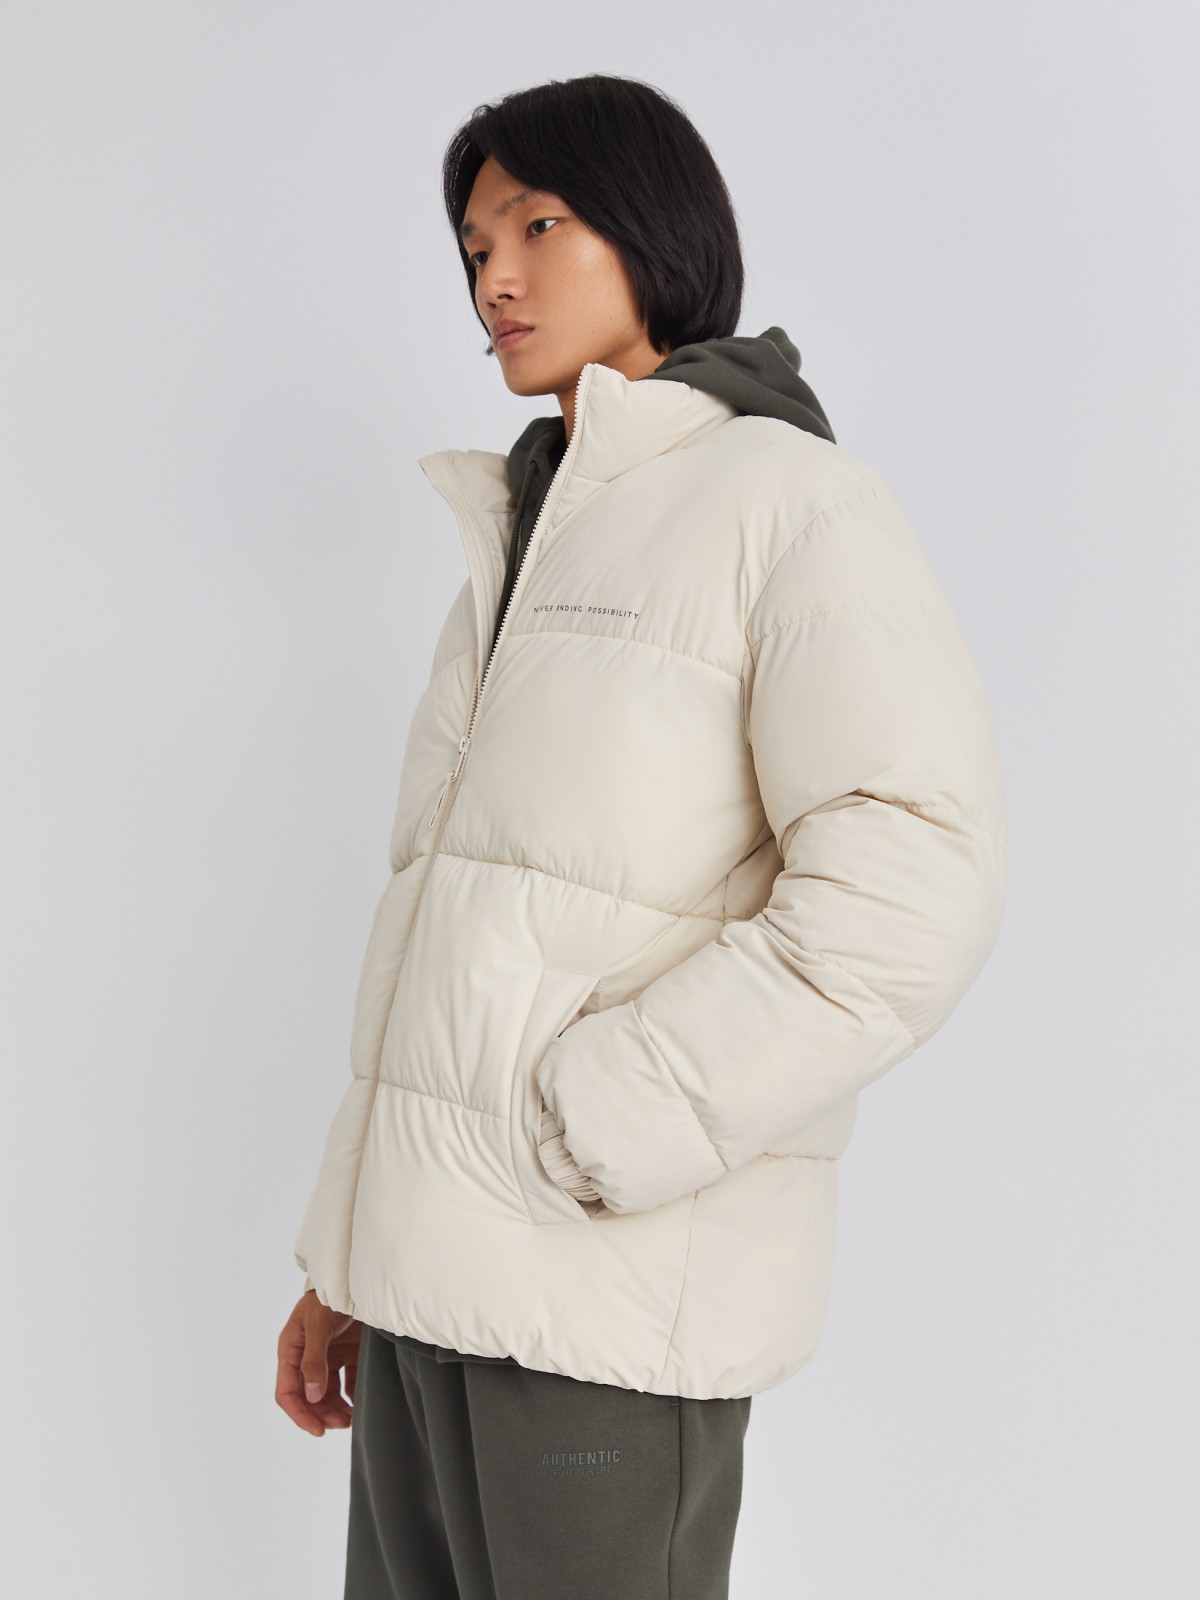 Тёплая стёганая куртка на молнии с воротником-стойкой zolla 01334510L134, цвет молоко, размер S - фото 4